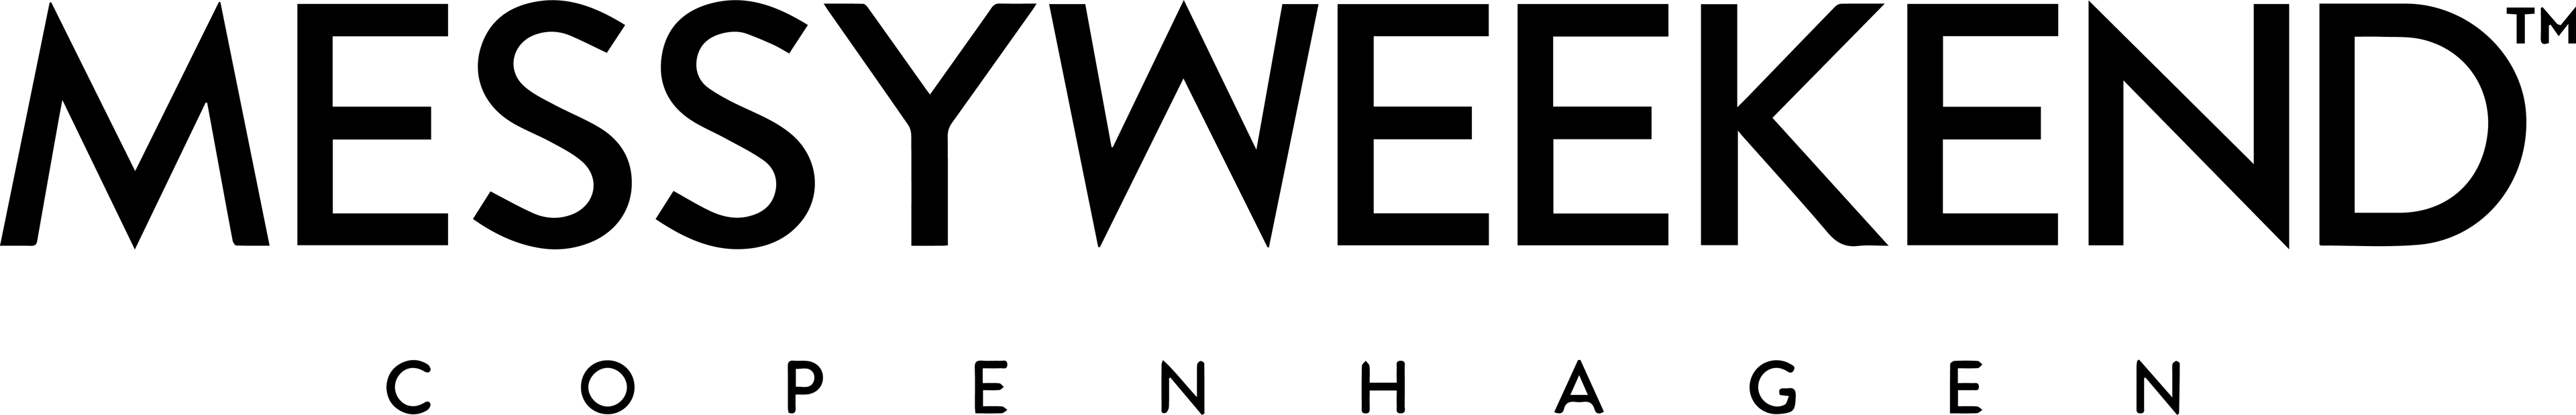 MESSYWEEKEND Support Deutschland logo